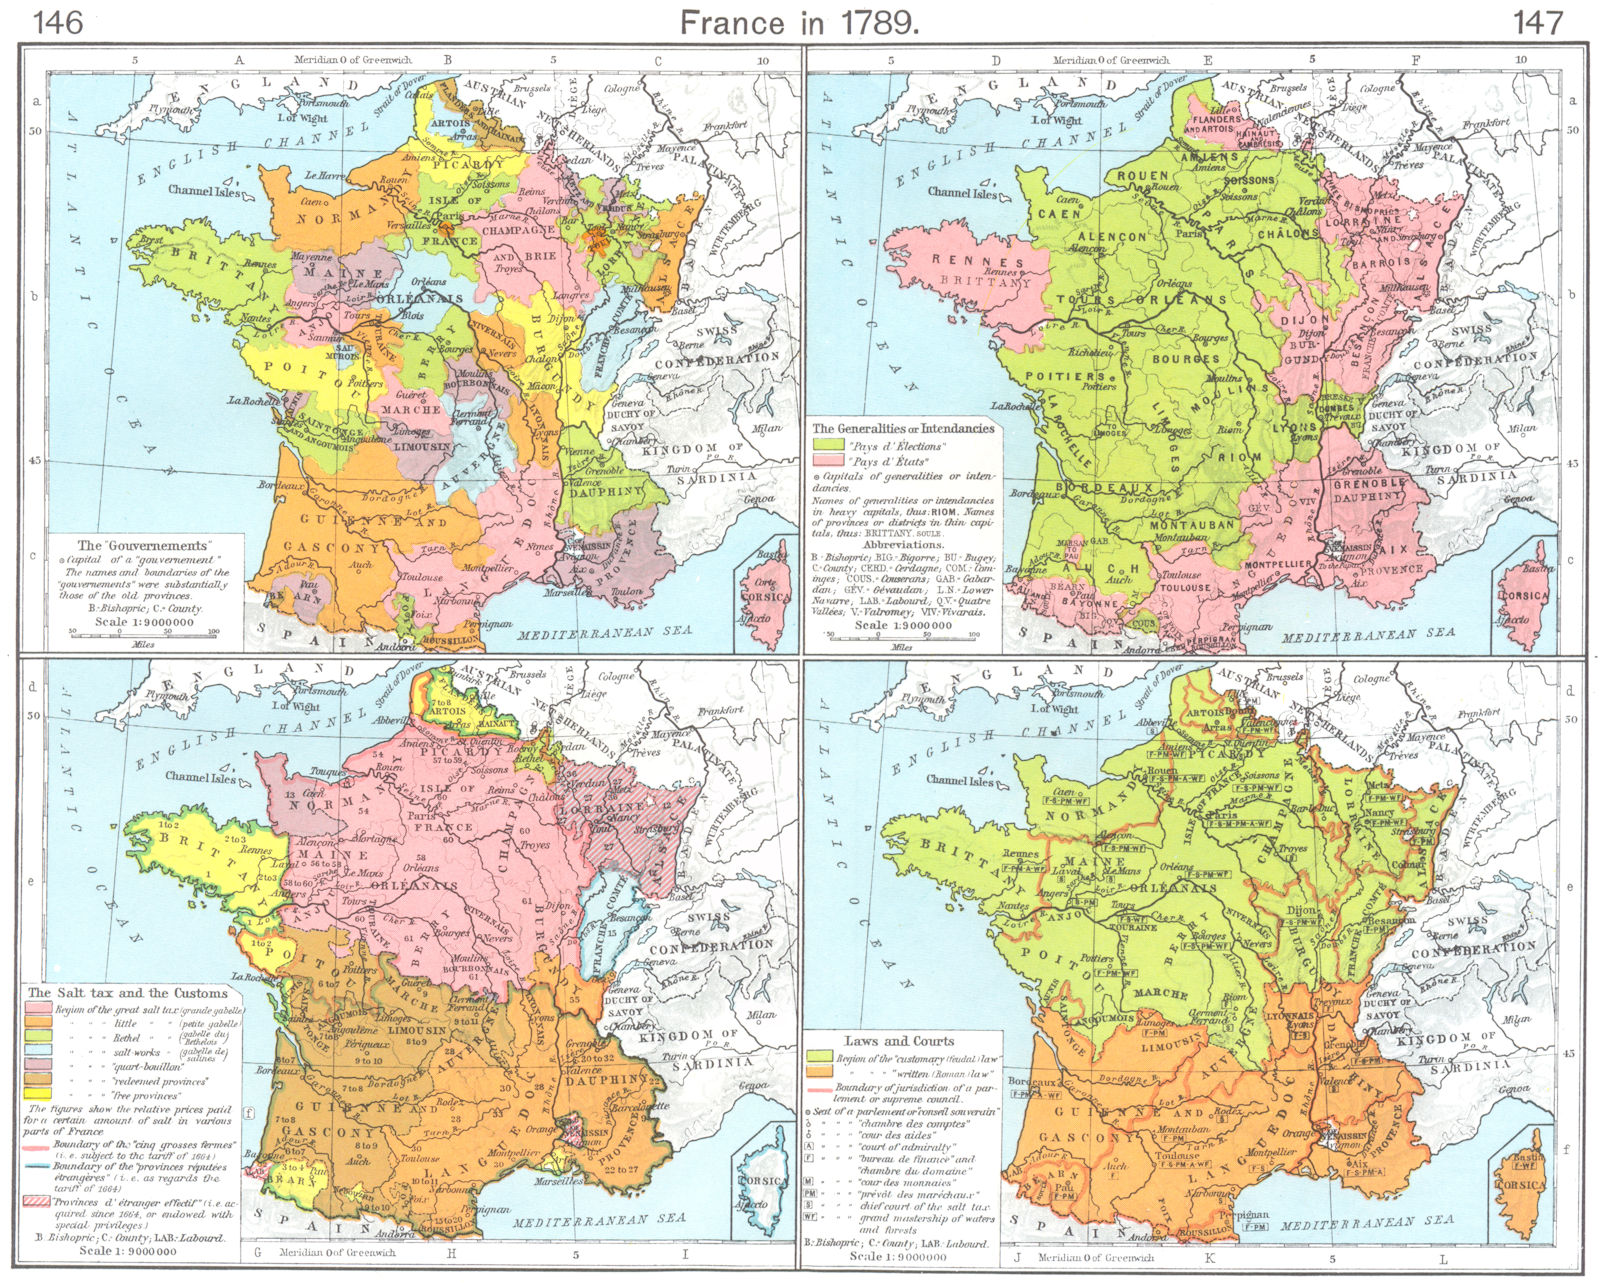 FRANCE. 1789. Gouvernements; Intendancies; Salt tax & Customs; Courts 1956 map